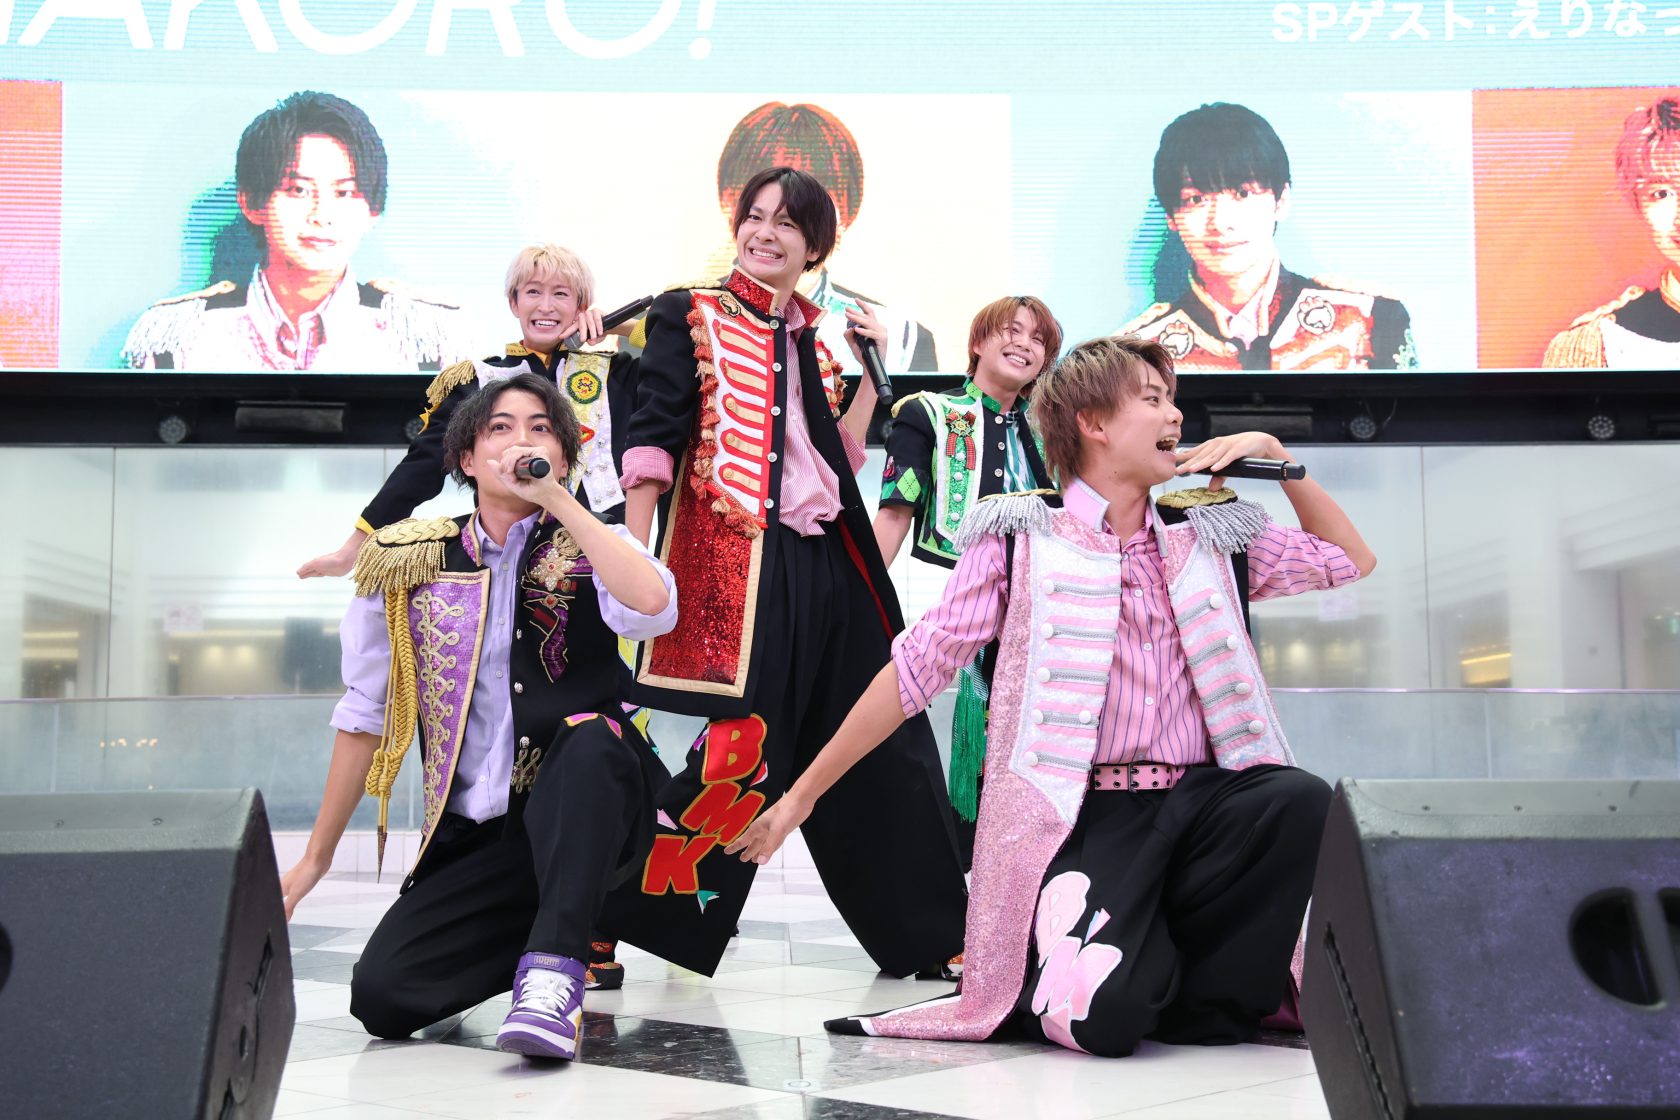 名古屋発5人組「BMK」4枚目シングルリリース記念イベント開催！タイトル曲「NANAKORO!」披露